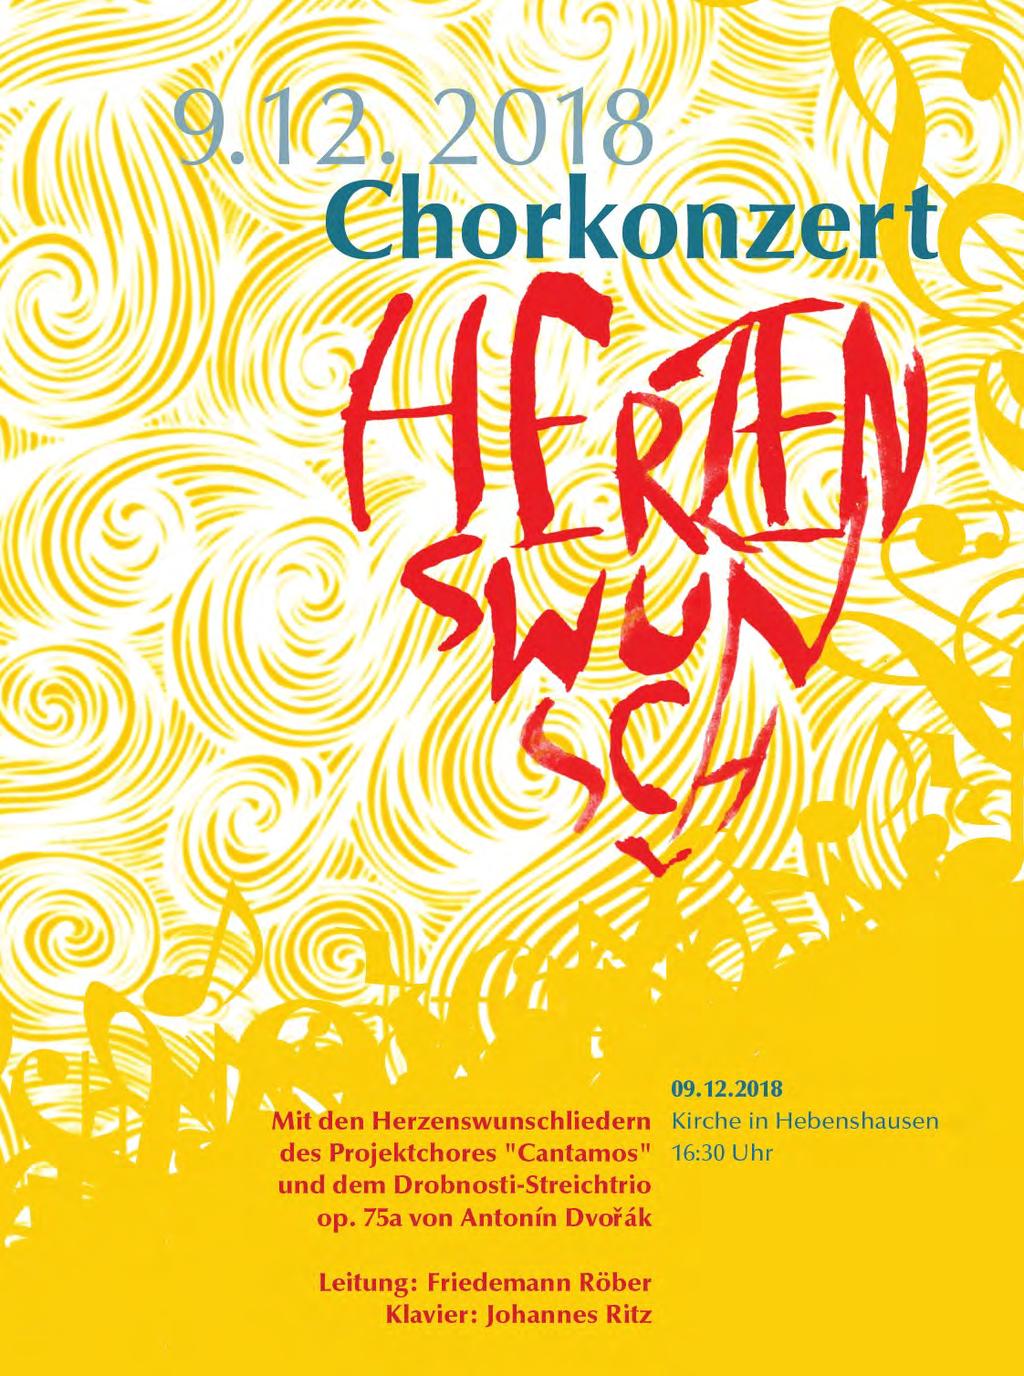 Chorkonzert Herzenswunsch Cantamos ist eine offene Chorformation aus Witzenhausen, die sich unter der Leitung von Friedemann Röber jedes Jahr einen neuen Themenschwerpunkt setzt.